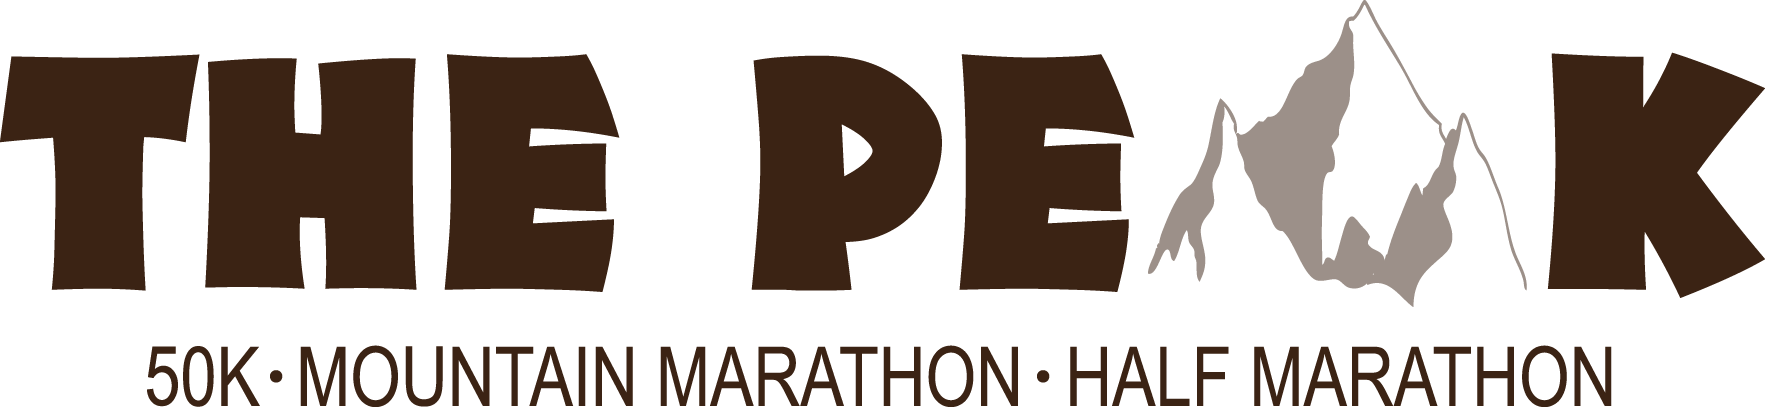 The Peak 50K, Marathon and Half Marathon logo on RaceRaves